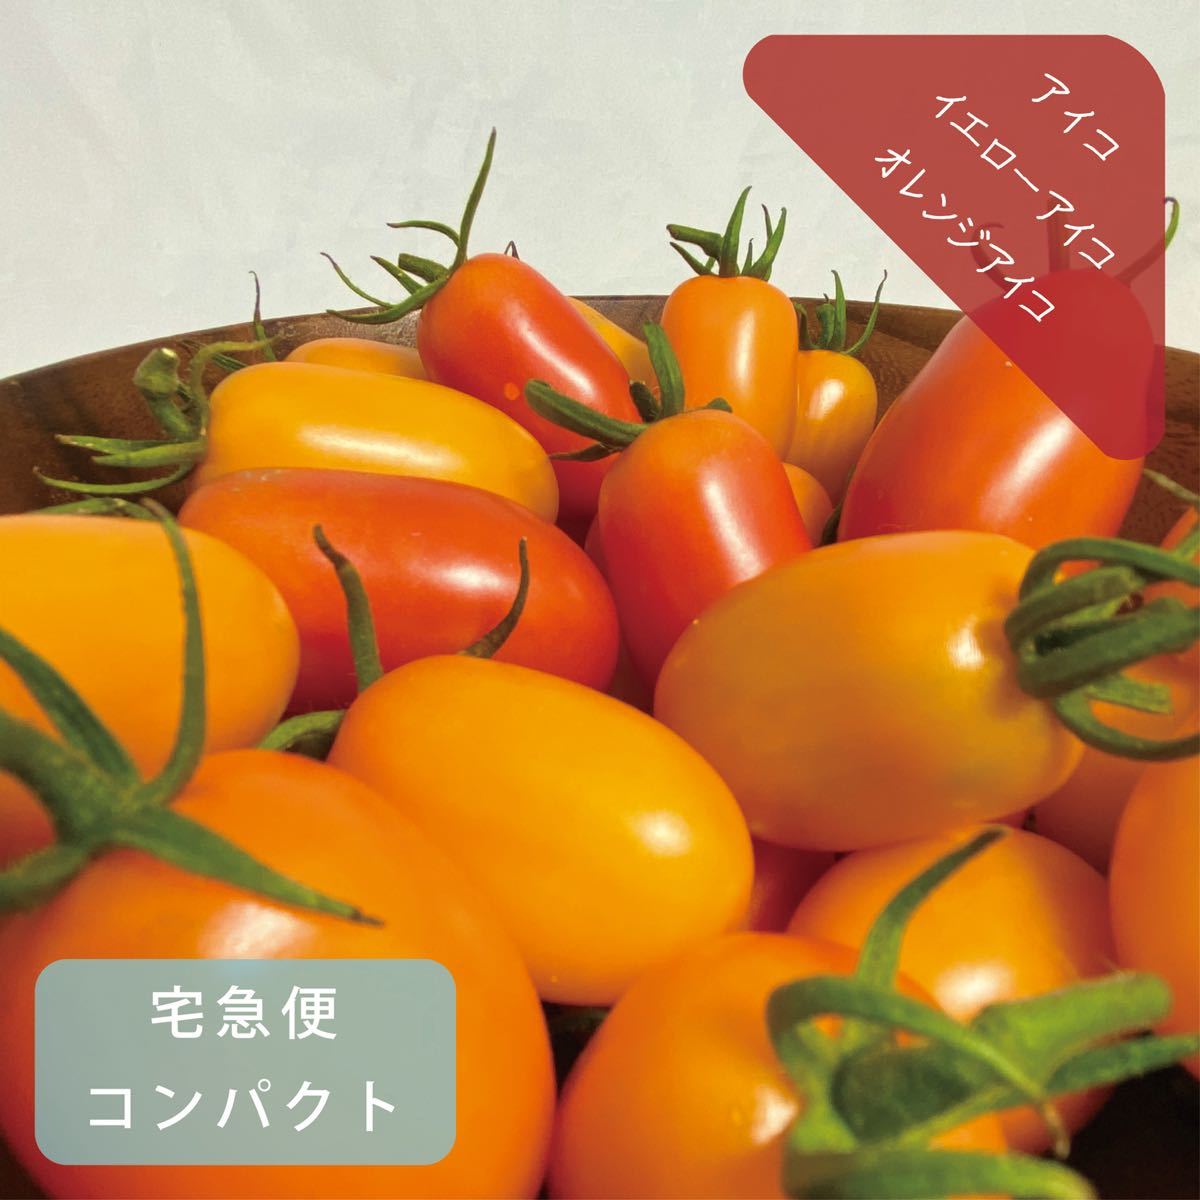 アイコ(レッド・イエロー・オレンジ) 約950g 無農薬栽培ミニトマト詰め合わせ